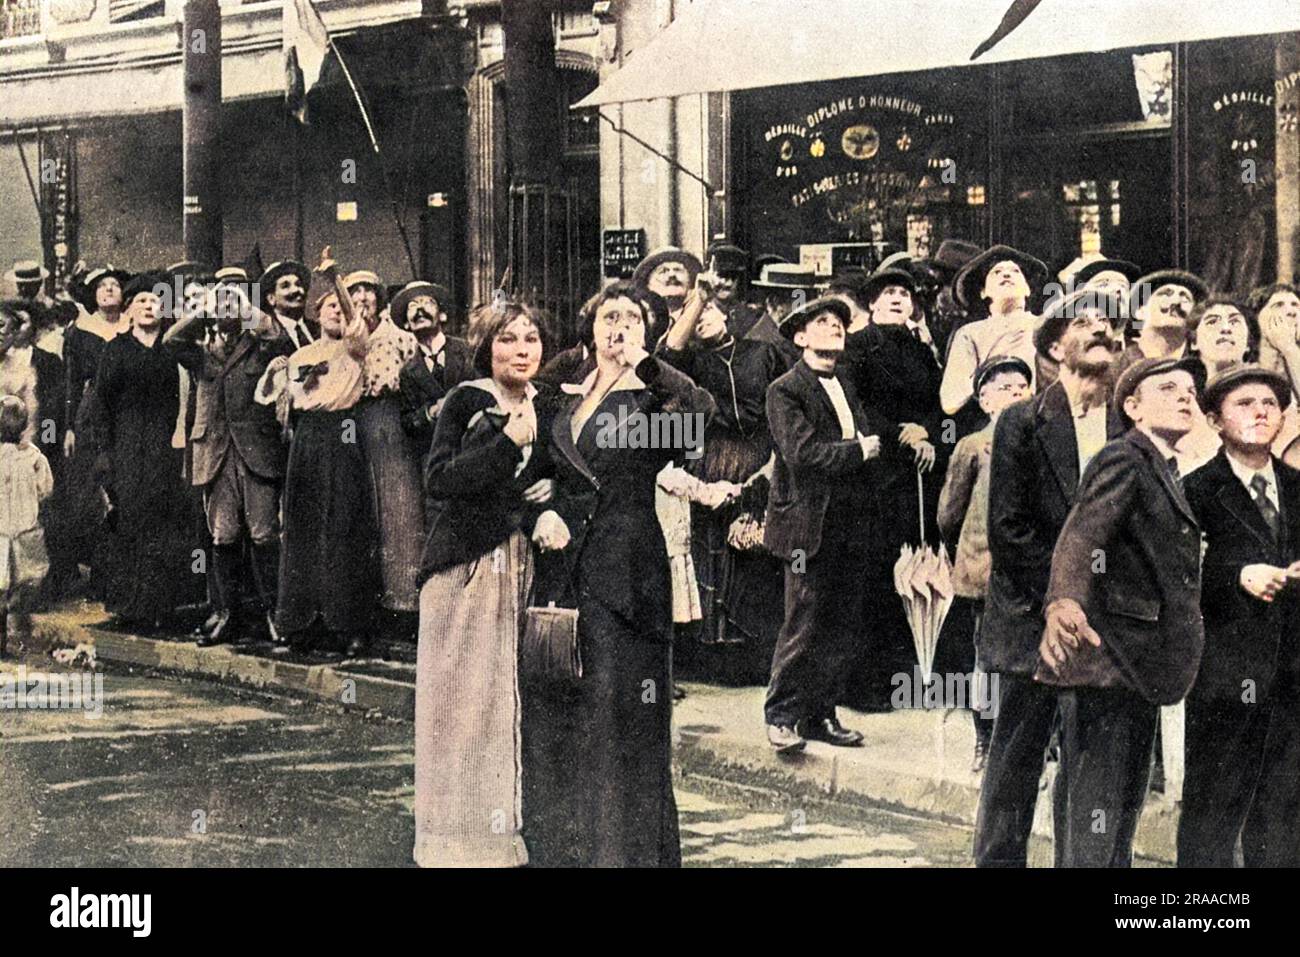 Les Parisiens photographiés dans l'un des boulevards de la ville, regardant des gratte-ciel, ont l'intention de faire des manœuvres d'un avion allemand Taube. Date: 1914 Banque D'Images